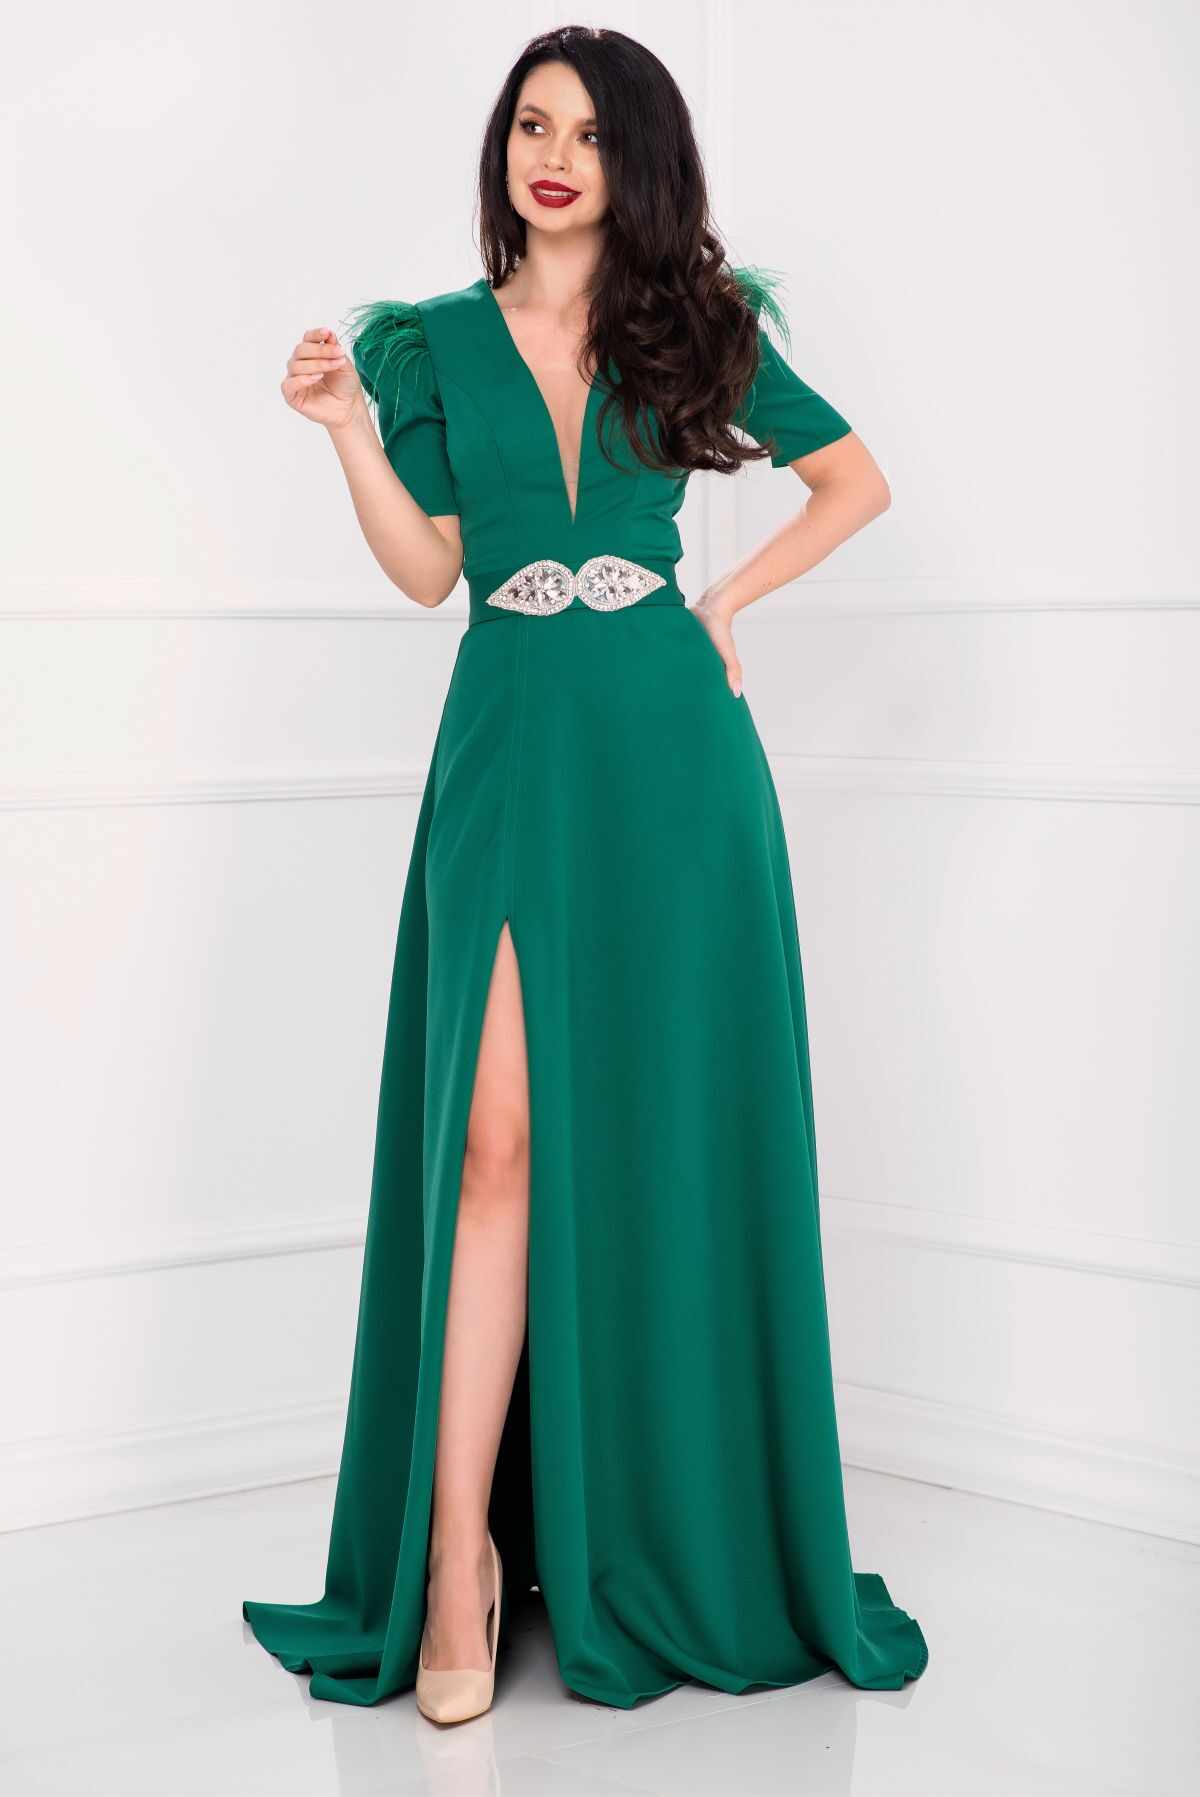 Rochie eleganta lunga Alissa verde cu crapatura pe picior si fulgi la umeri